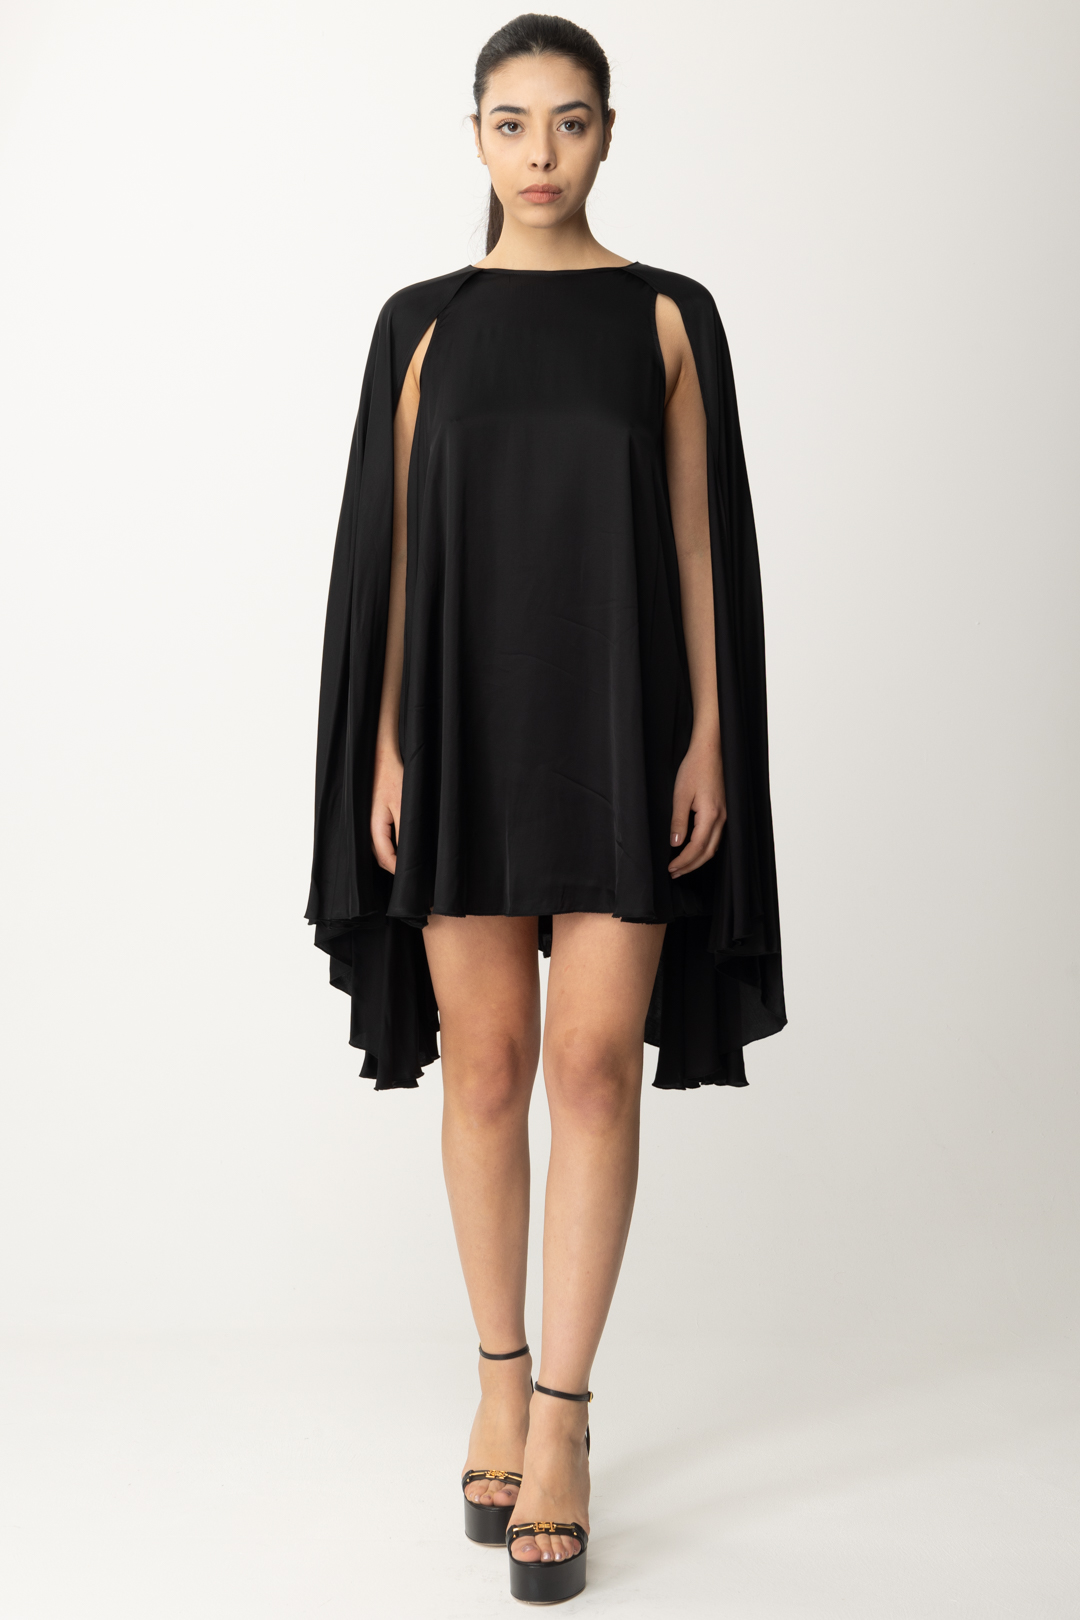 Preview: Aniye By Marys Cape Mini Dress Black